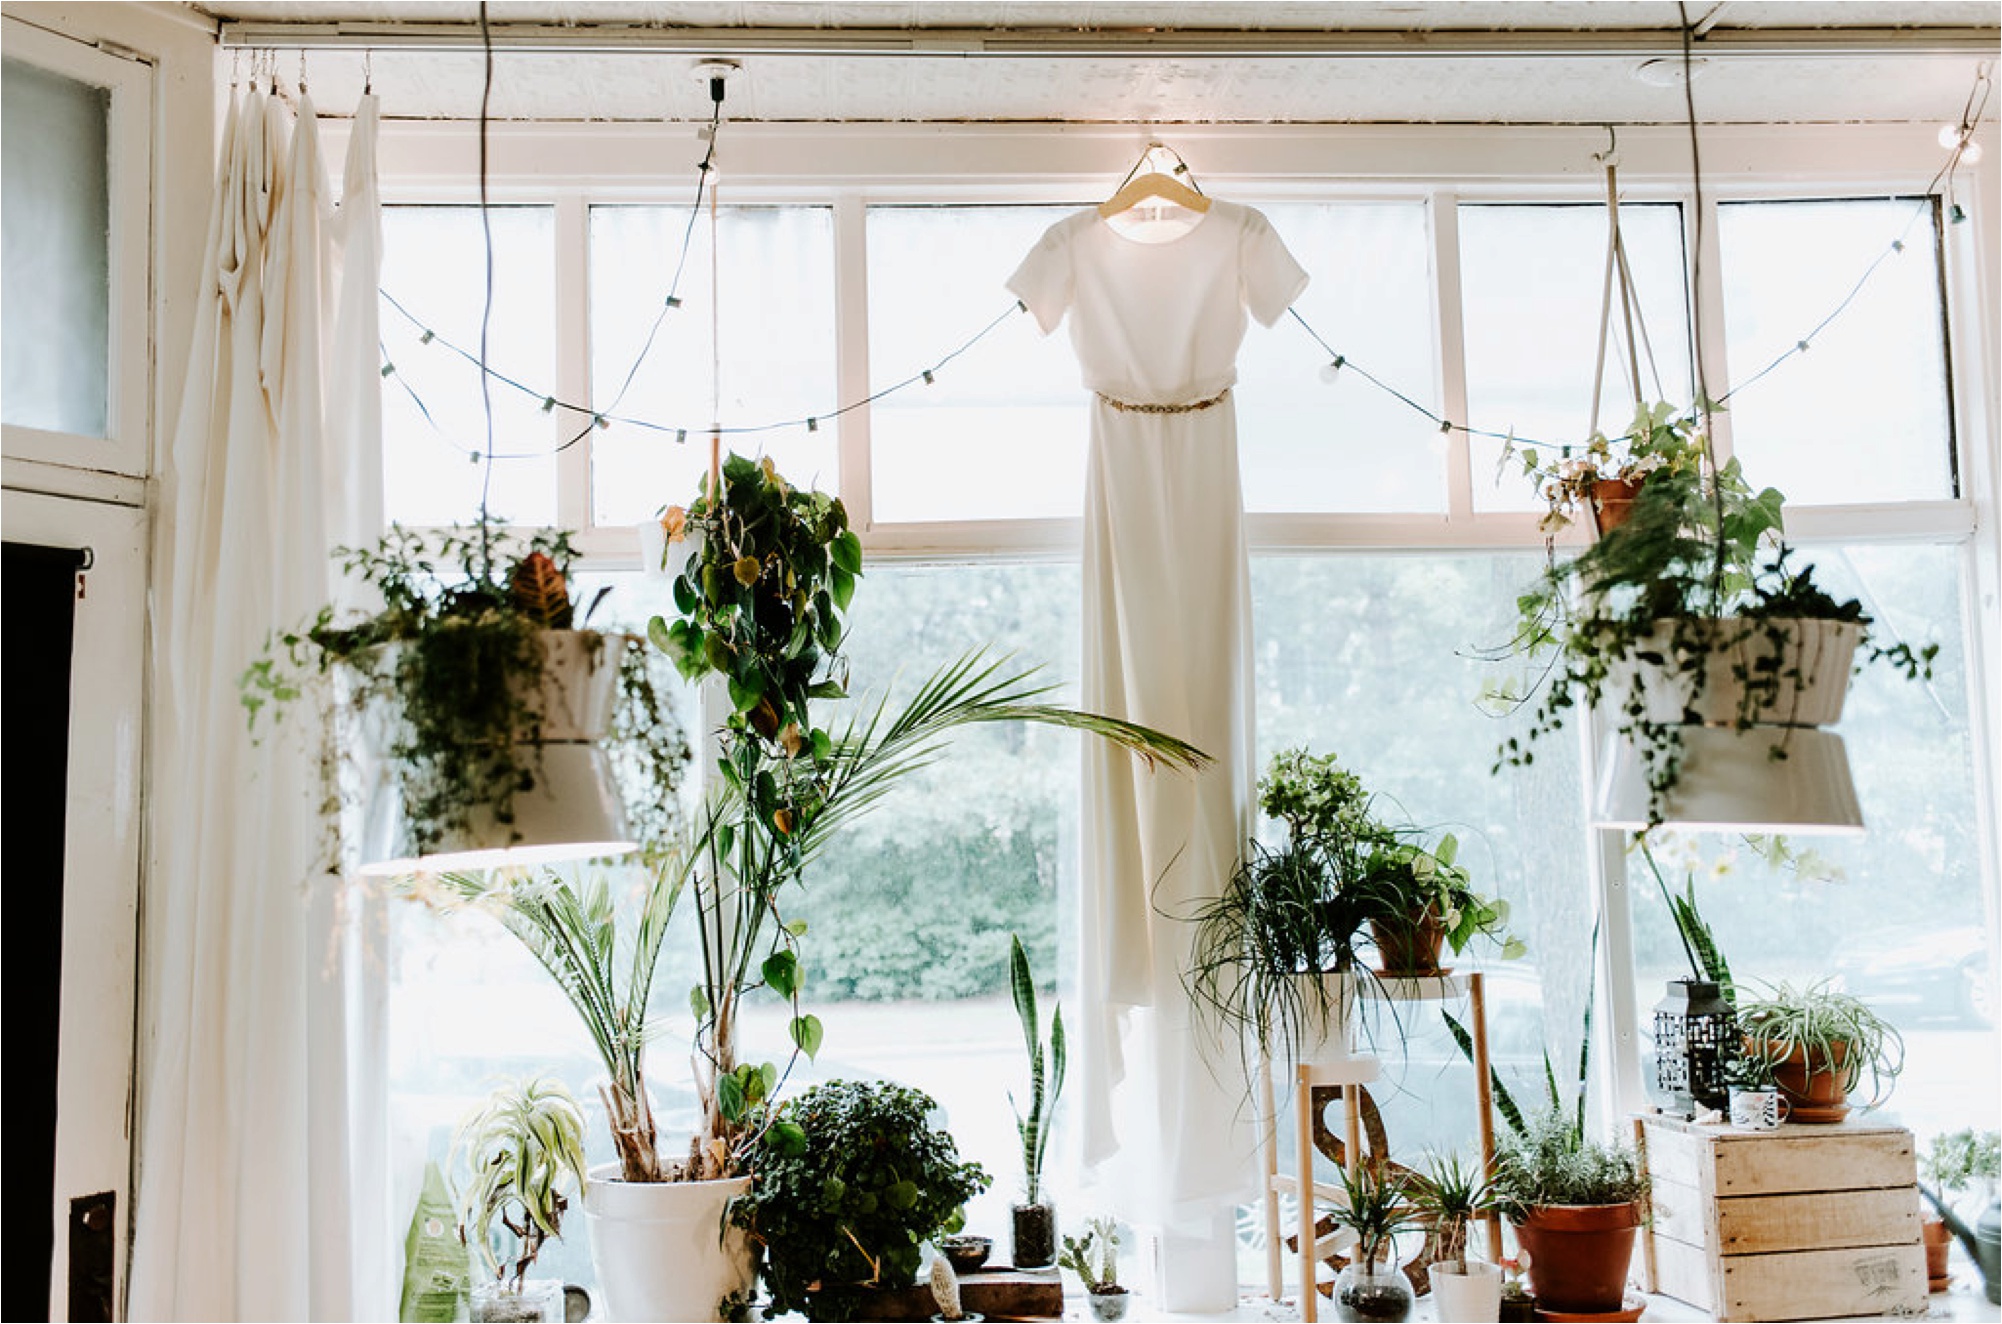  botanical bhldn wedding dress 